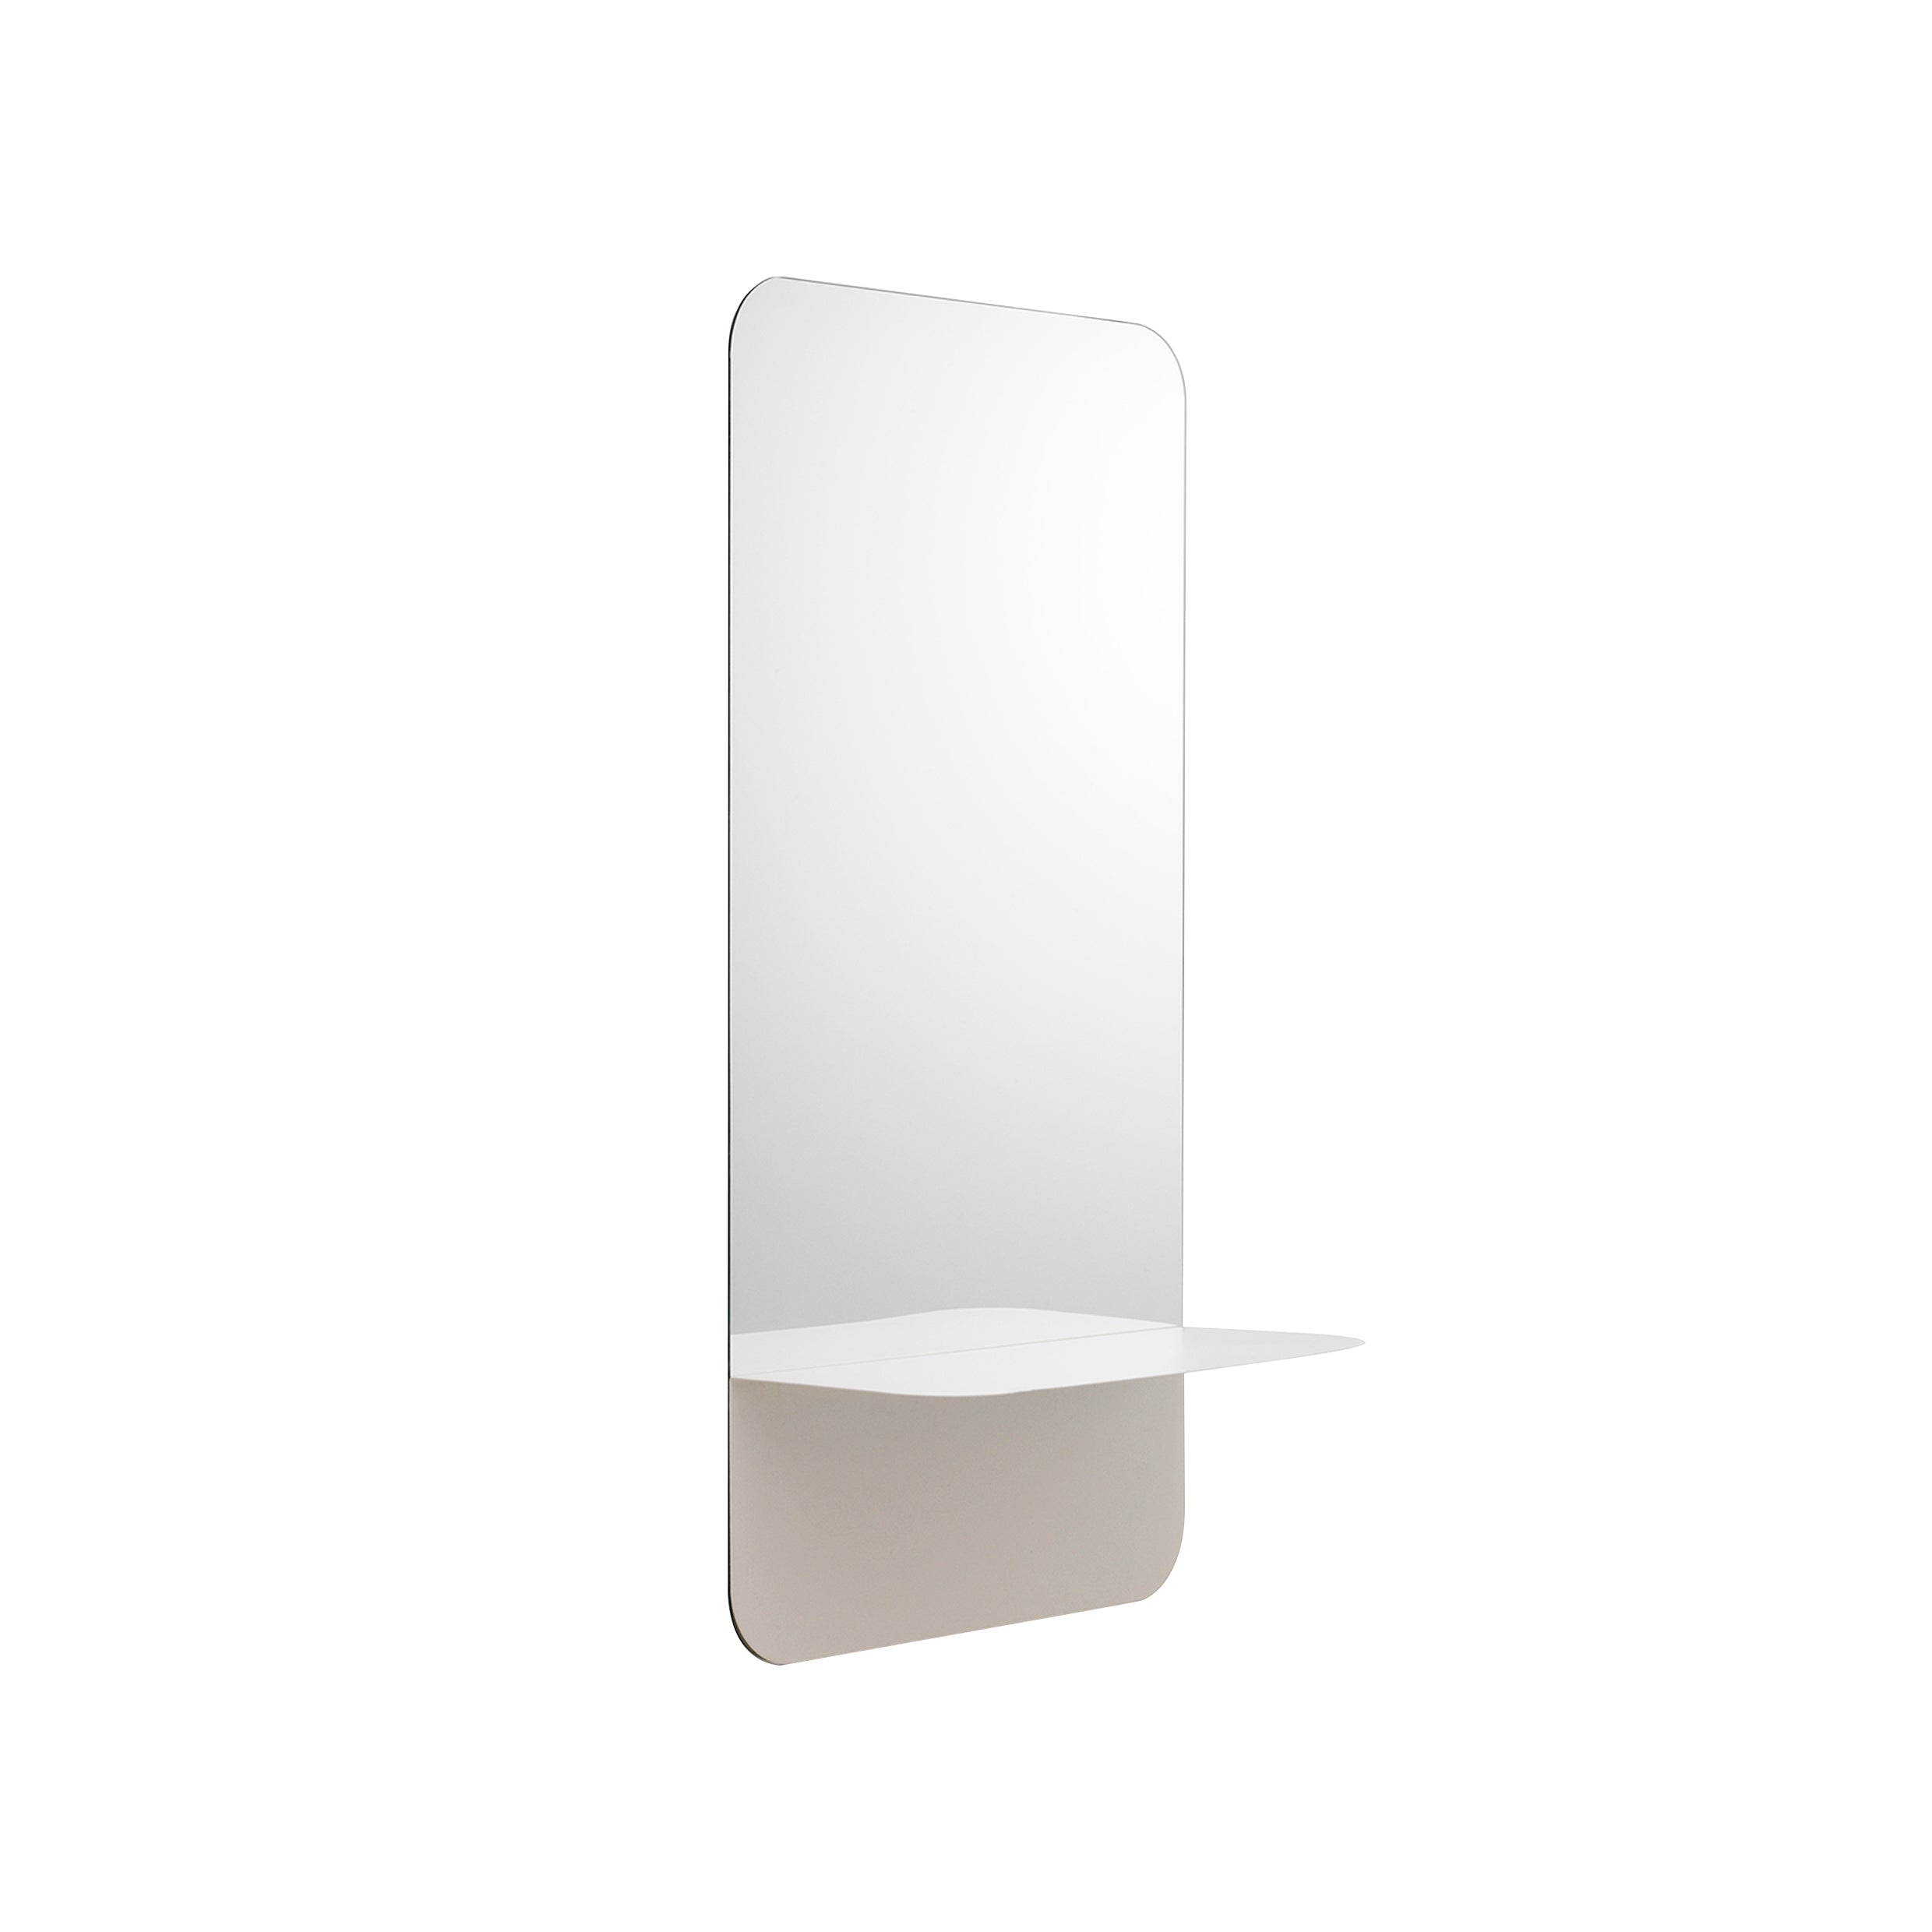 Horizon Mirror Collection: Rectangular + Vertical + White